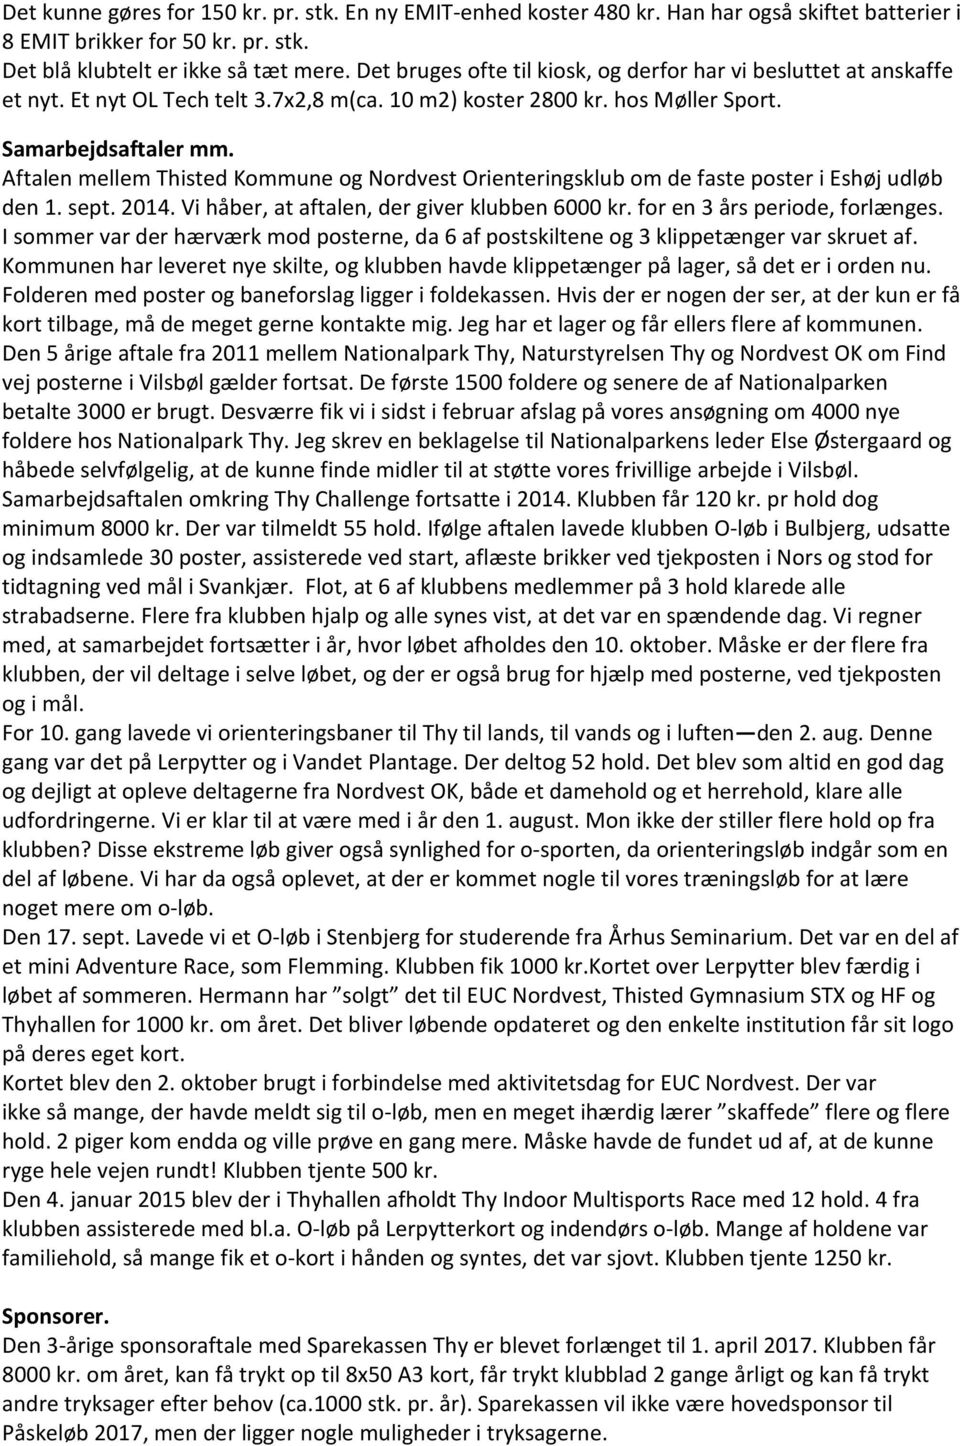 Aftalen mellem Thisted Kommune og Nordvest Orienteringsklub om de faste poster i Eshøj udløb den 1. sept. 2014. Vi håber, at aftalen, der giver klubben 6000 kr. for en 3 års periode, forlænges.